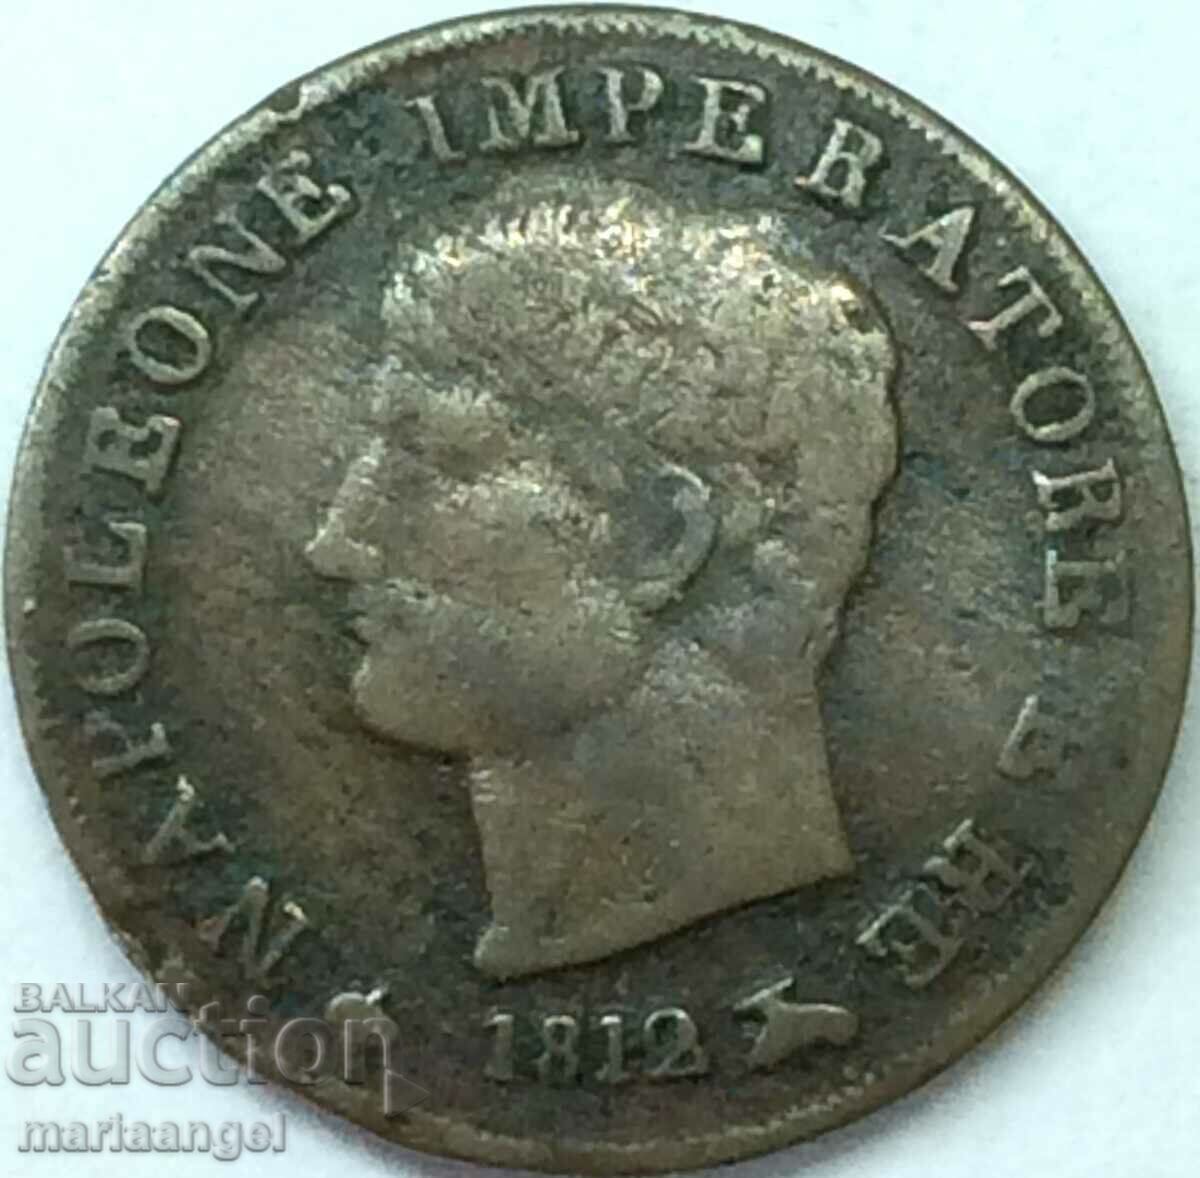 Napoleon 1 centesimo 1812 Italy M - Milan med